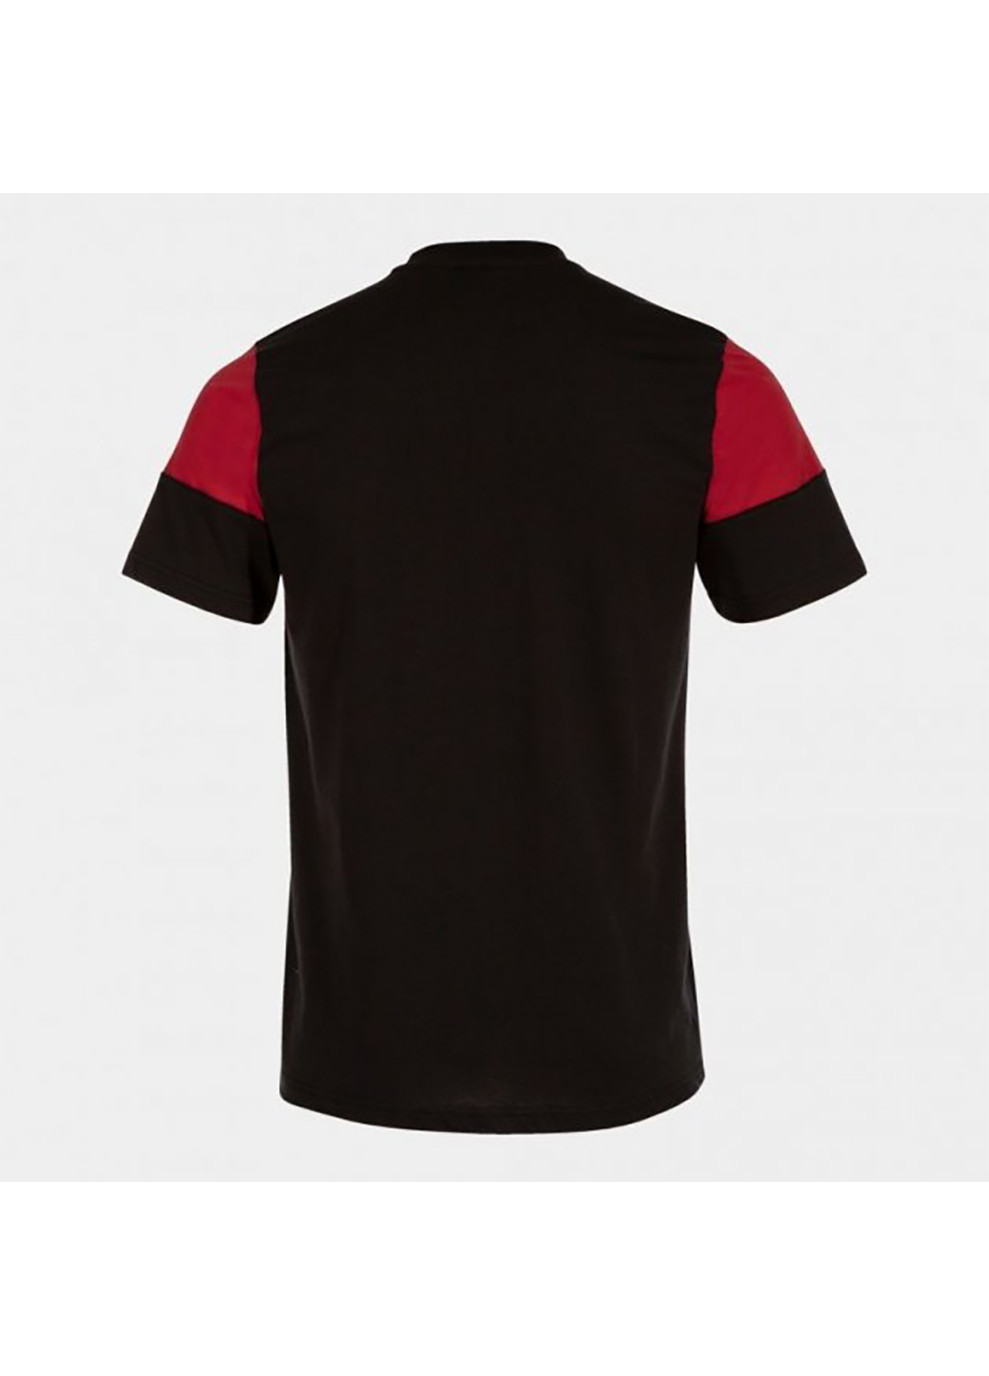 Комбинированная мужская футболка crew v черный красный Joma